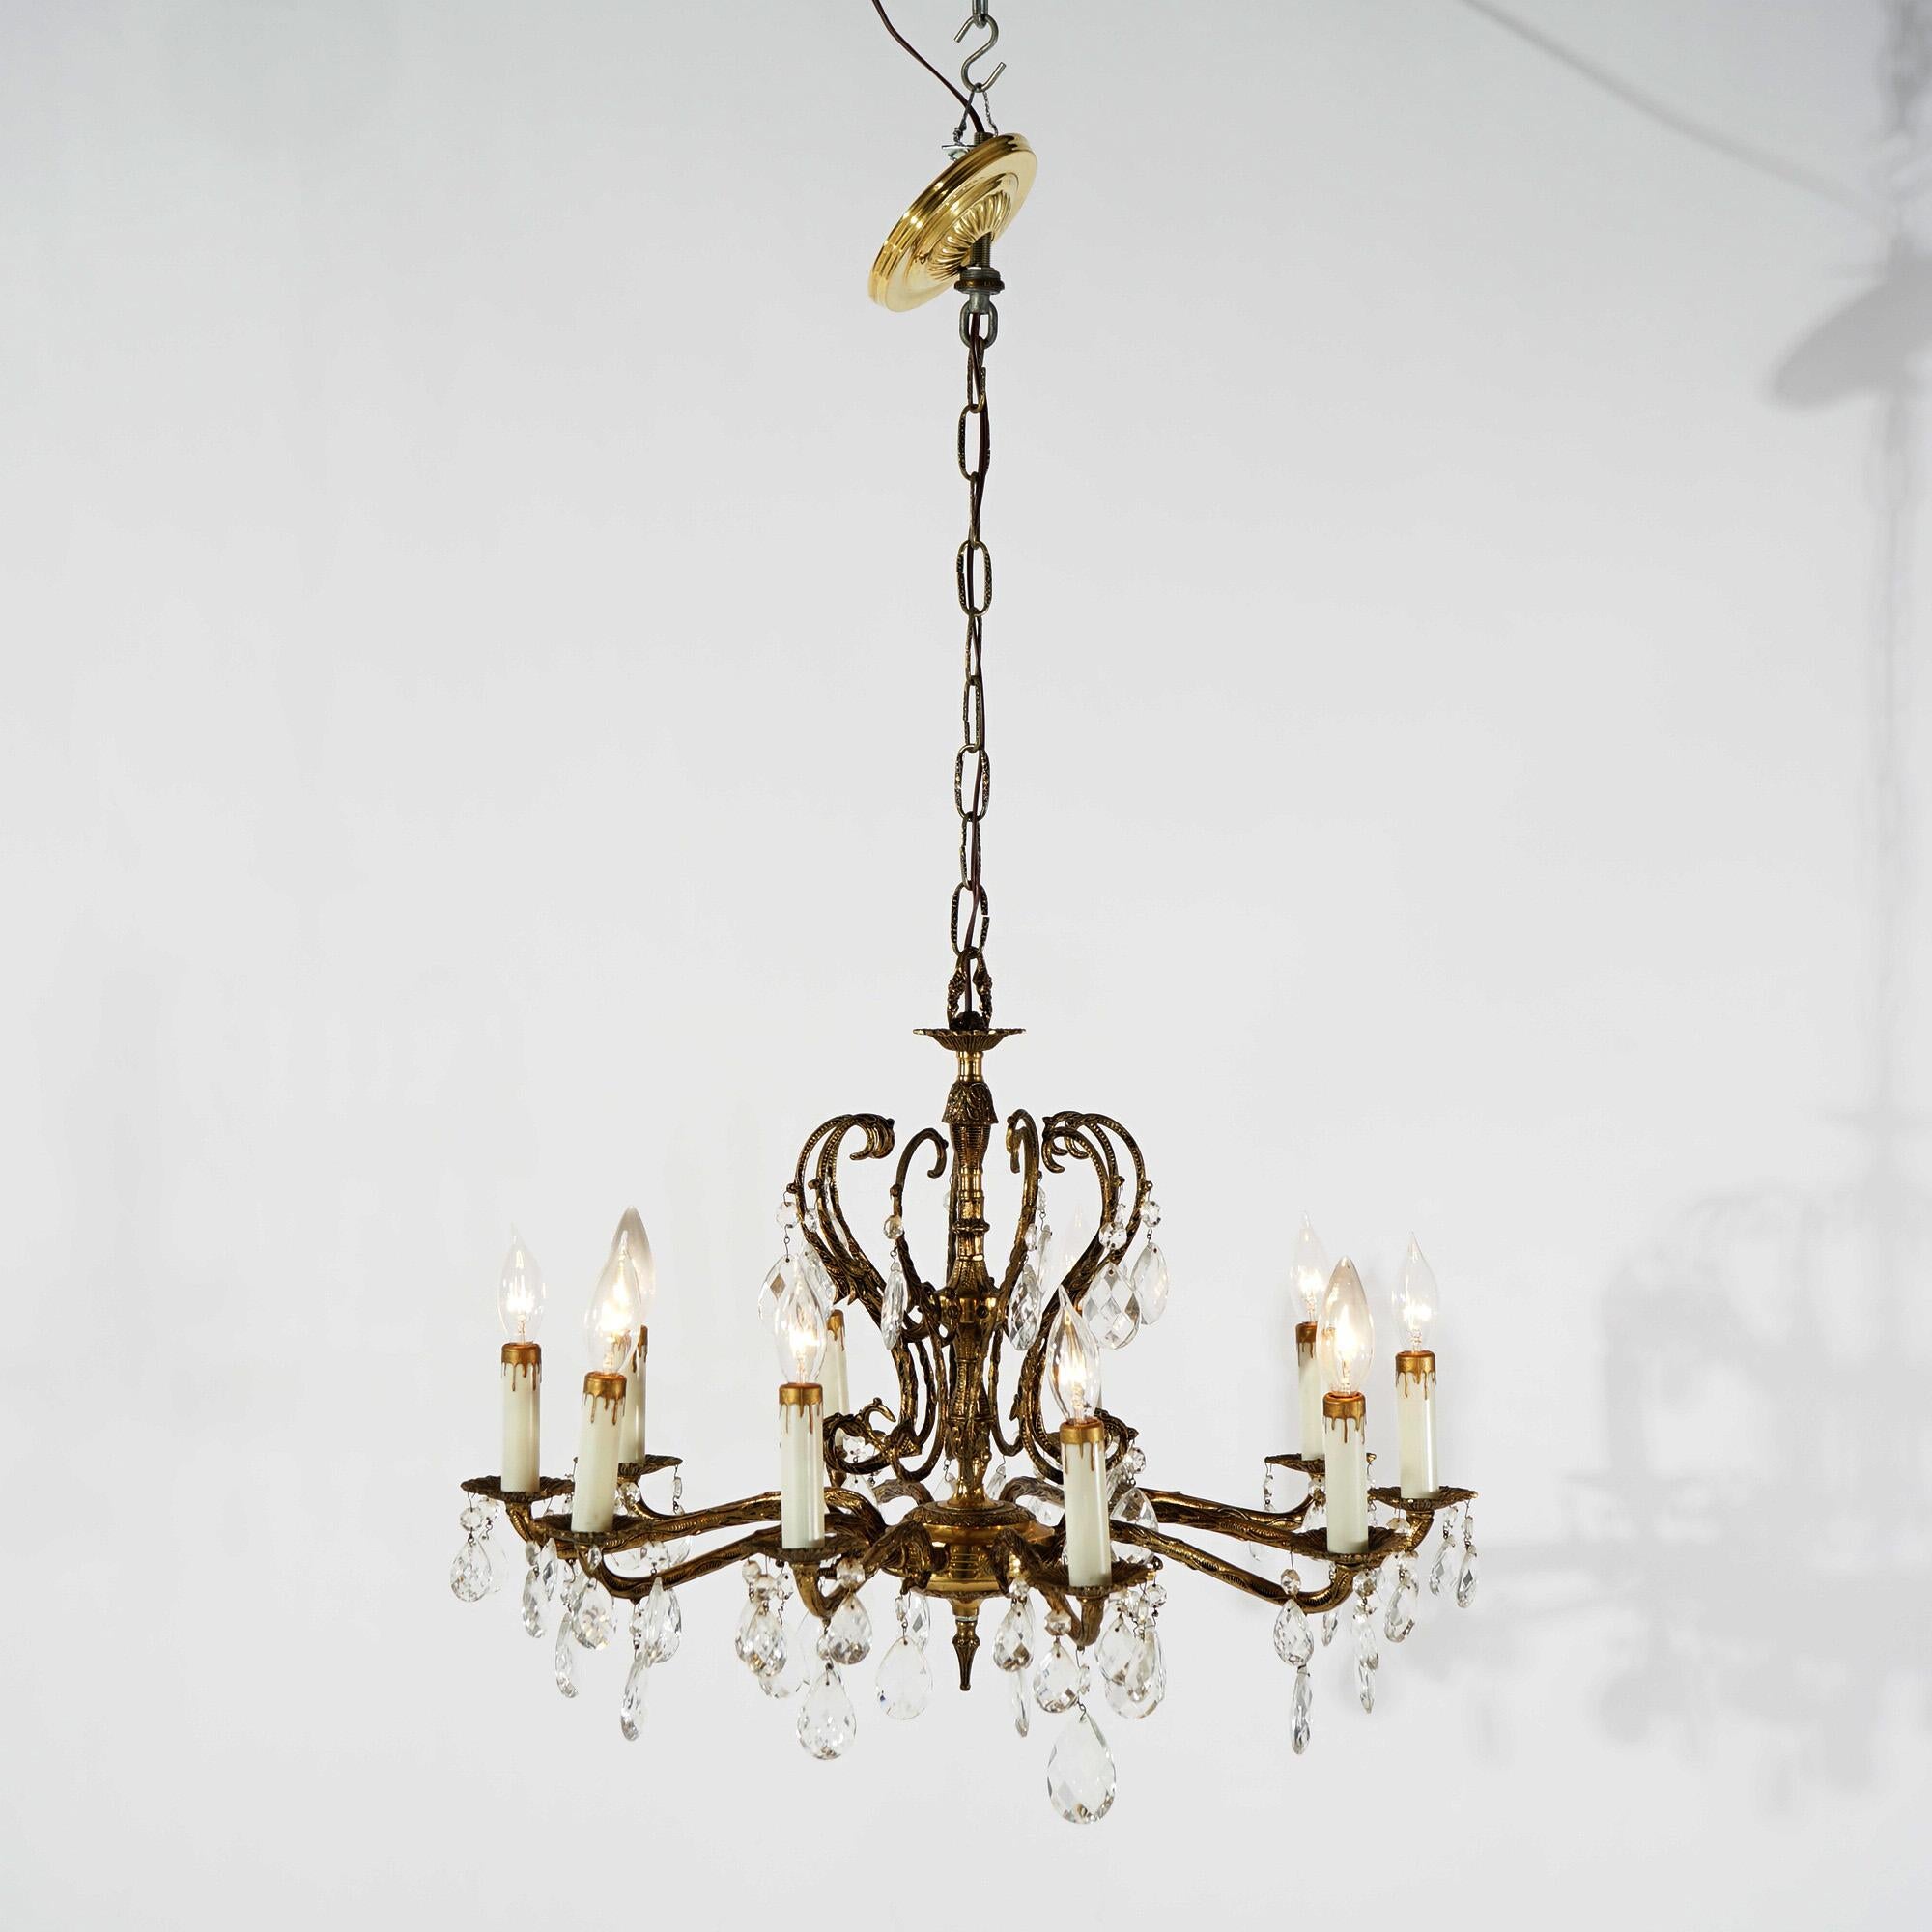 Lustre de style français en métal bronzé avec des bras en forme de volute se terminant par dix bougies et des cristaux suspendus, vers 1940.

Mesures - 36 